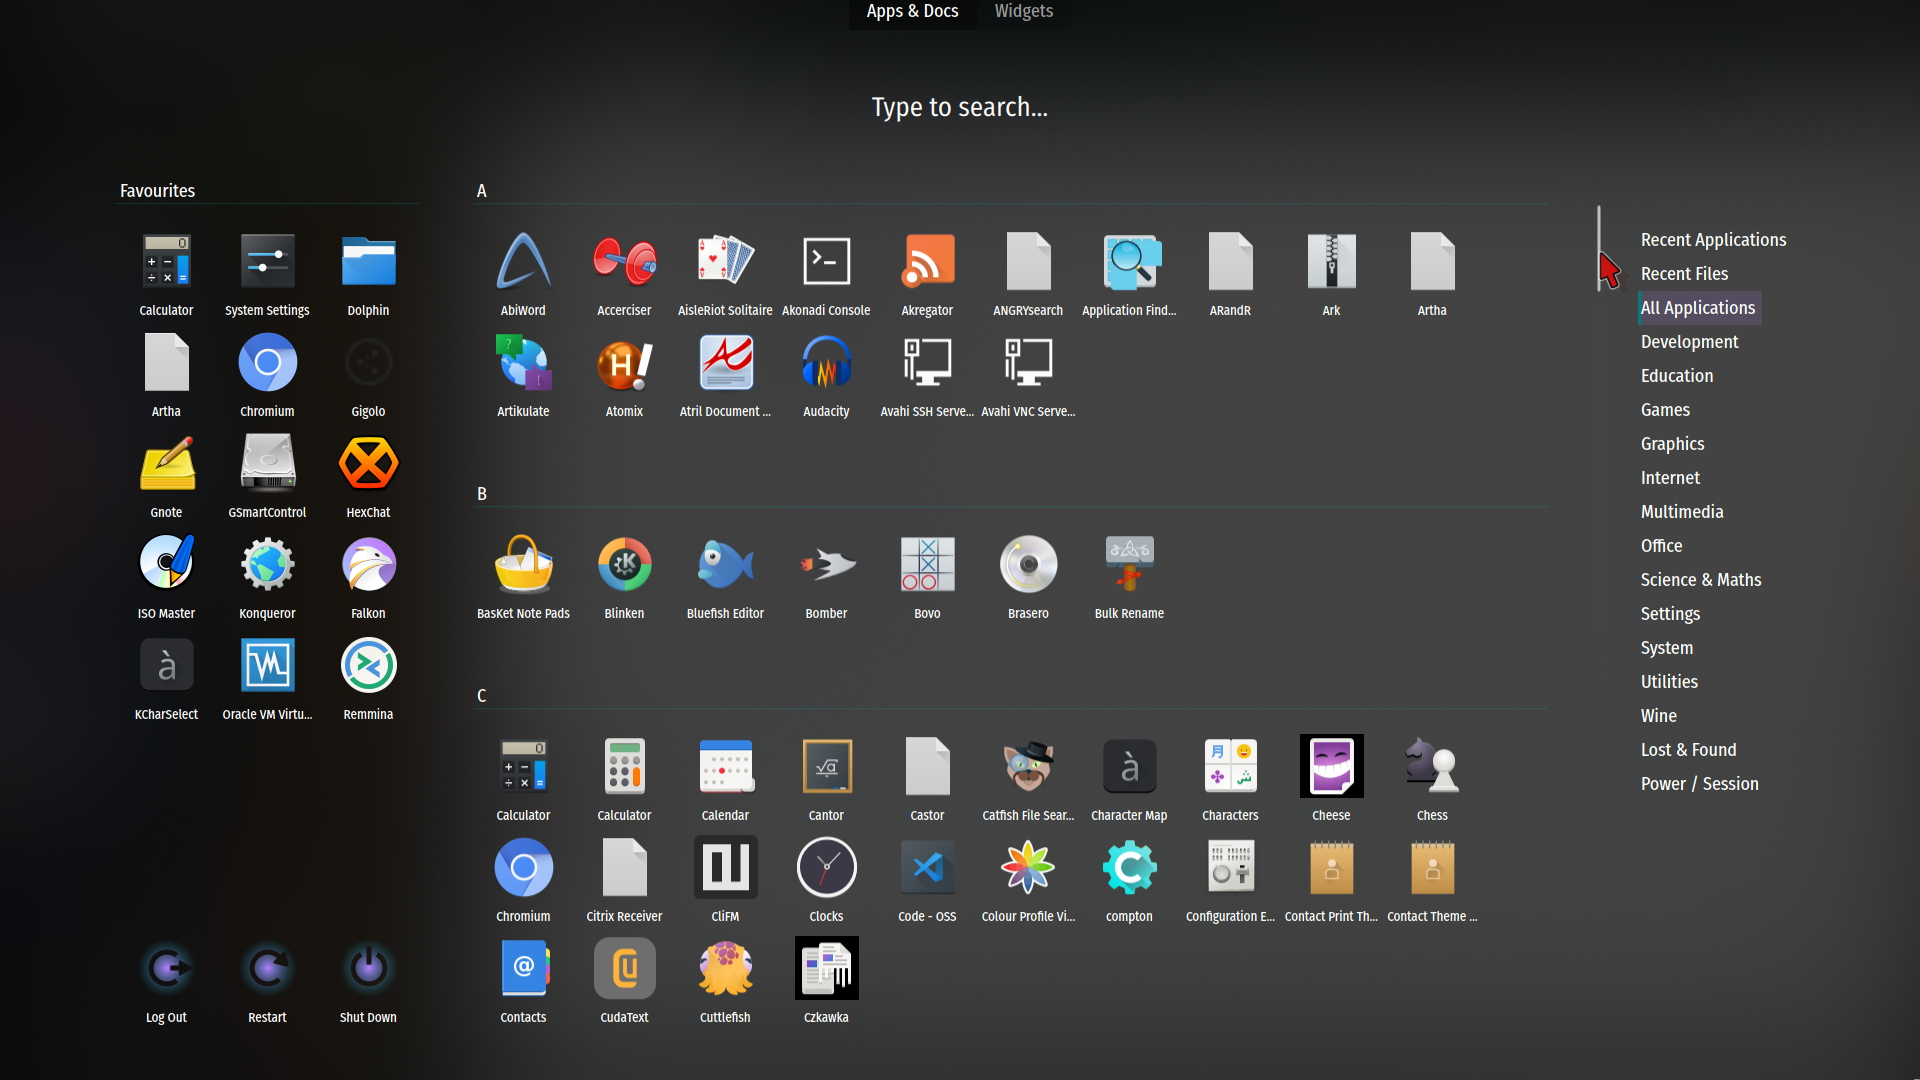 KMines - KDE Applications